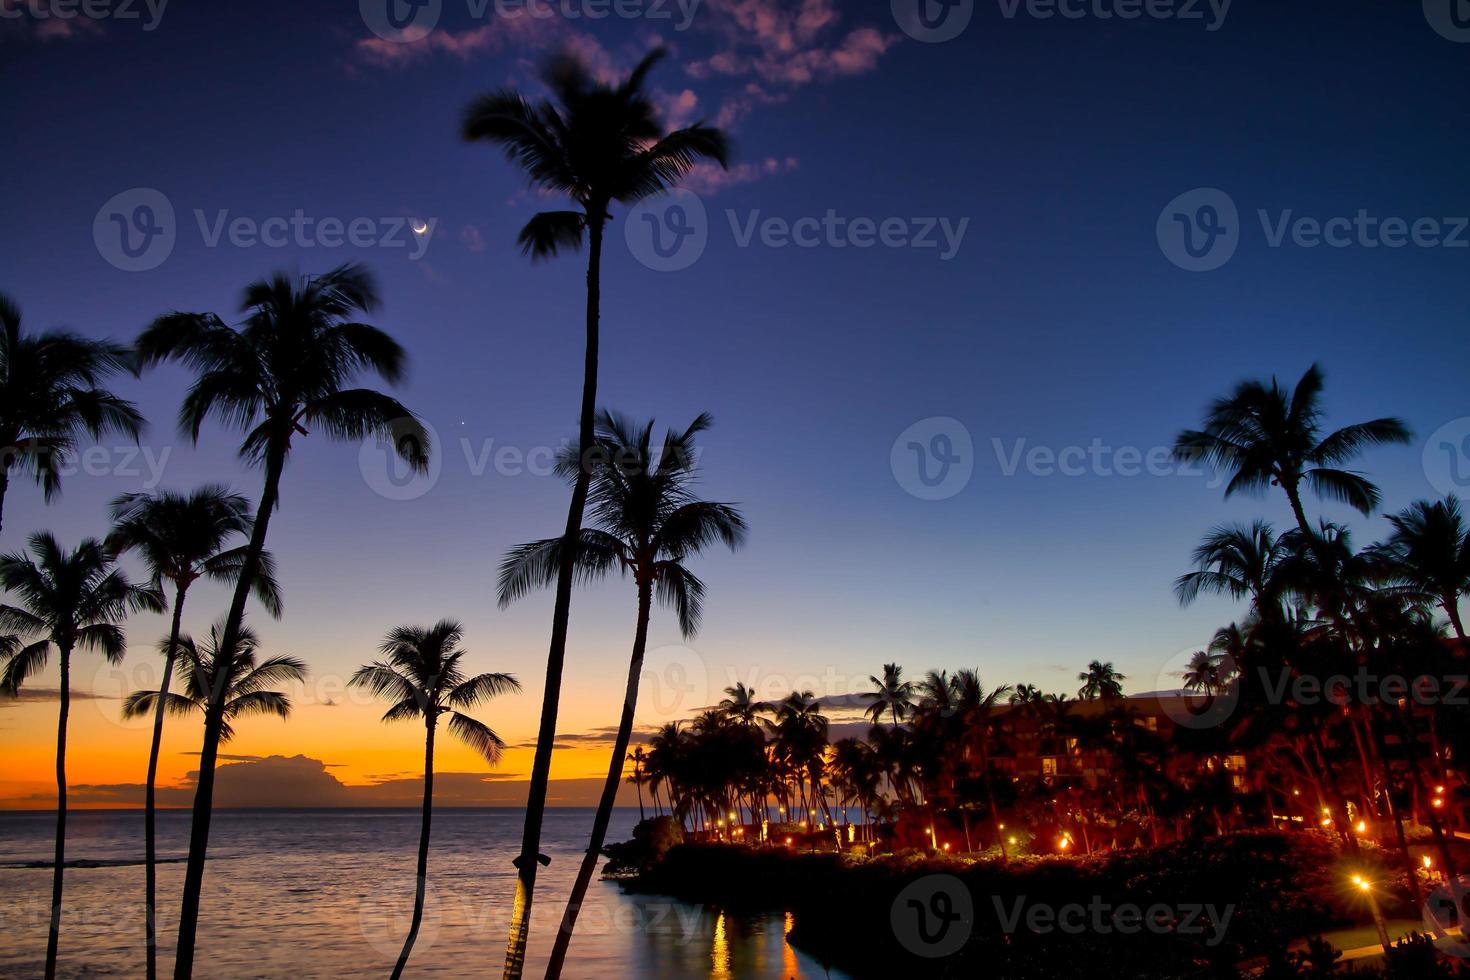 beau coucher de soleil sur la grande île, côte de kohala, waikoloa, hawaii photo